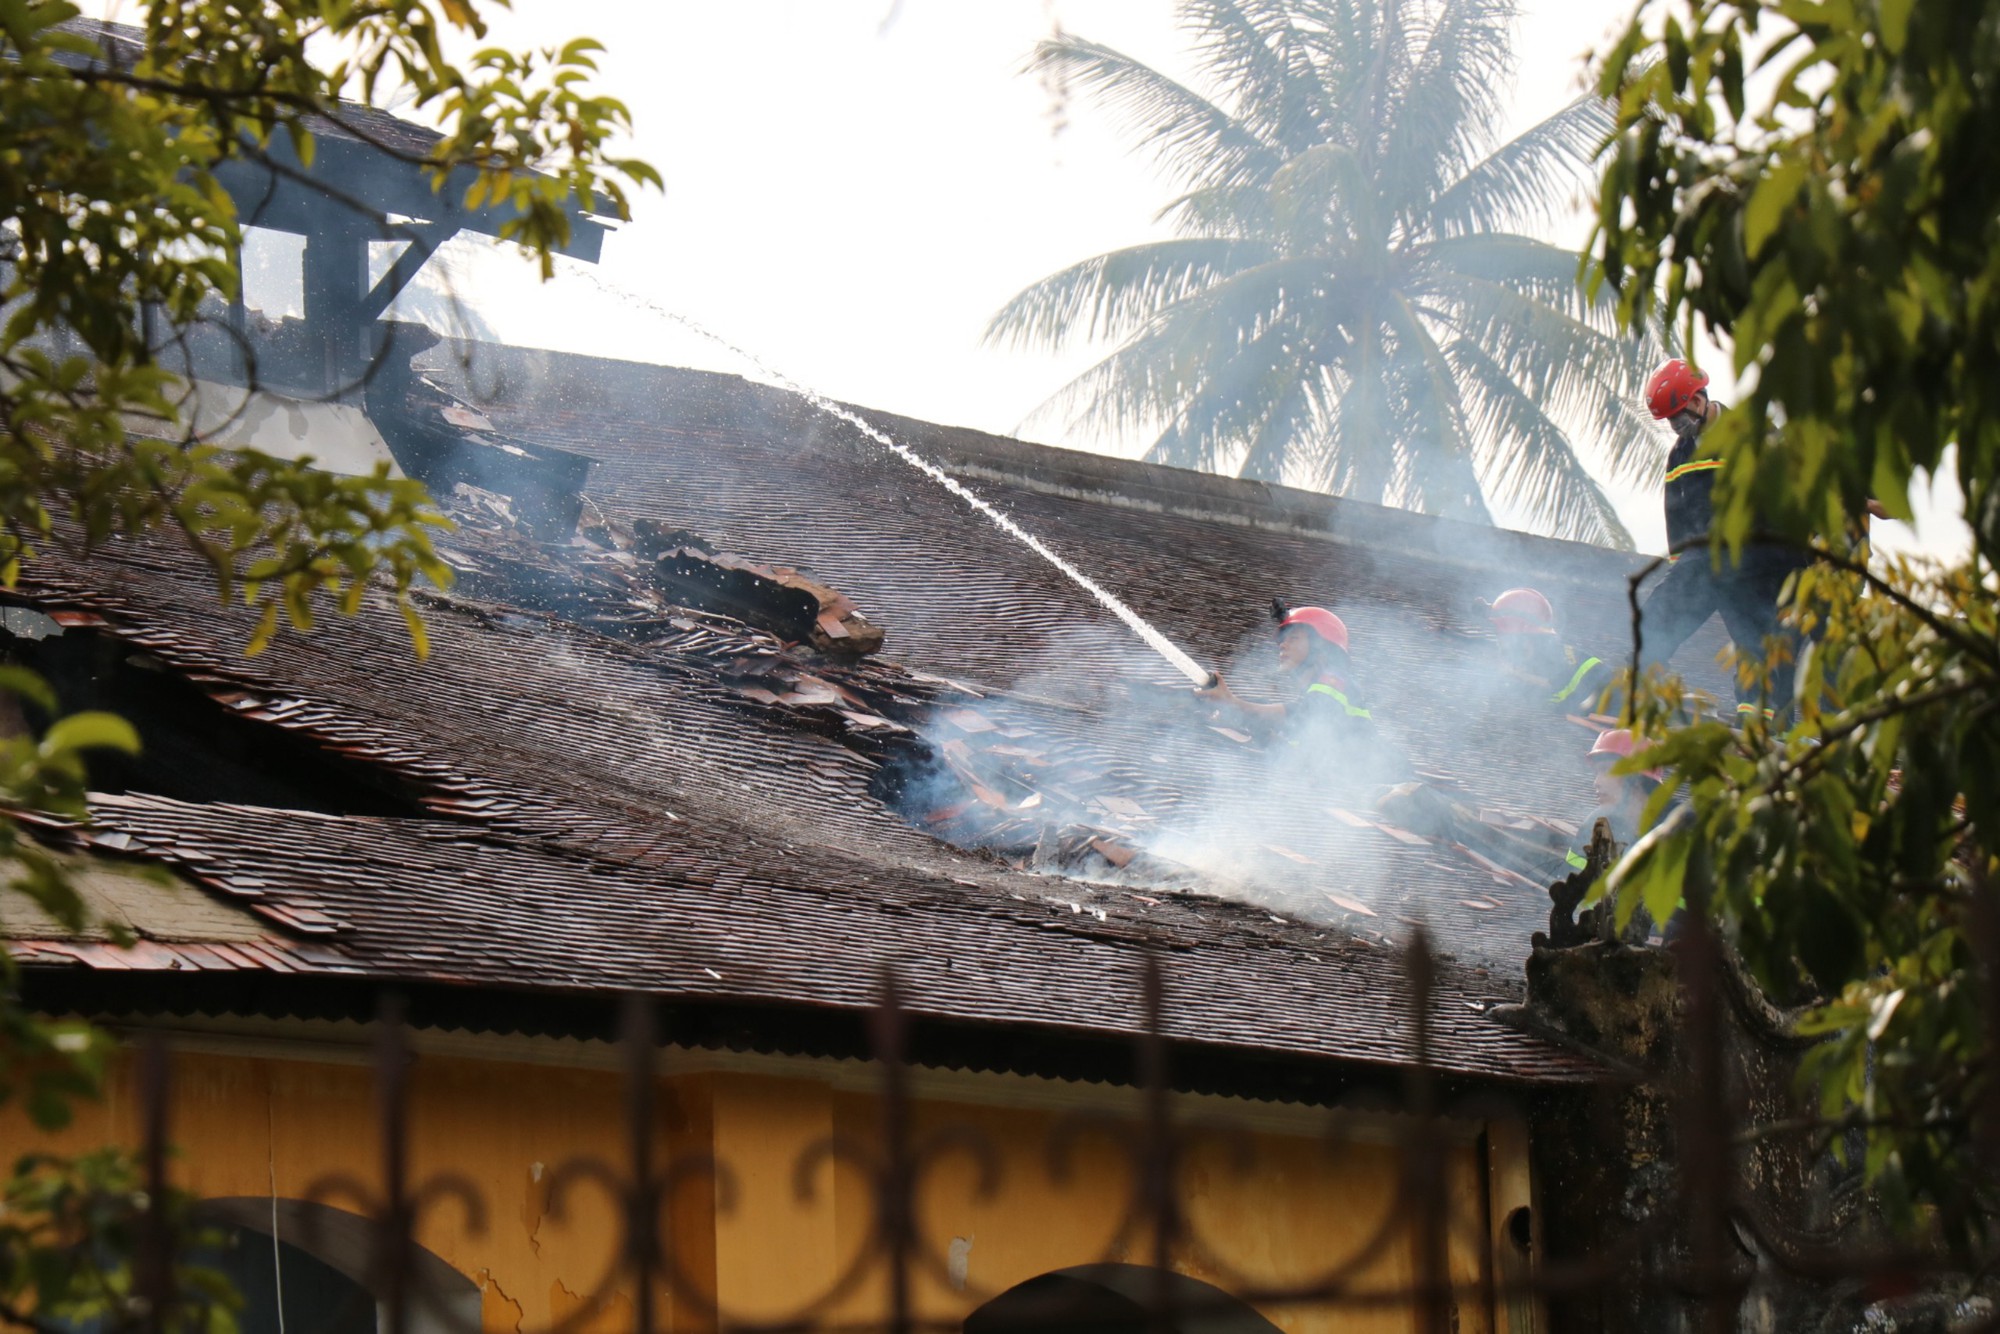 Cháy lớn tại Bảo tàng Lịch sử tỉnh Thừa Thiên - Huế - Ảnh 3.